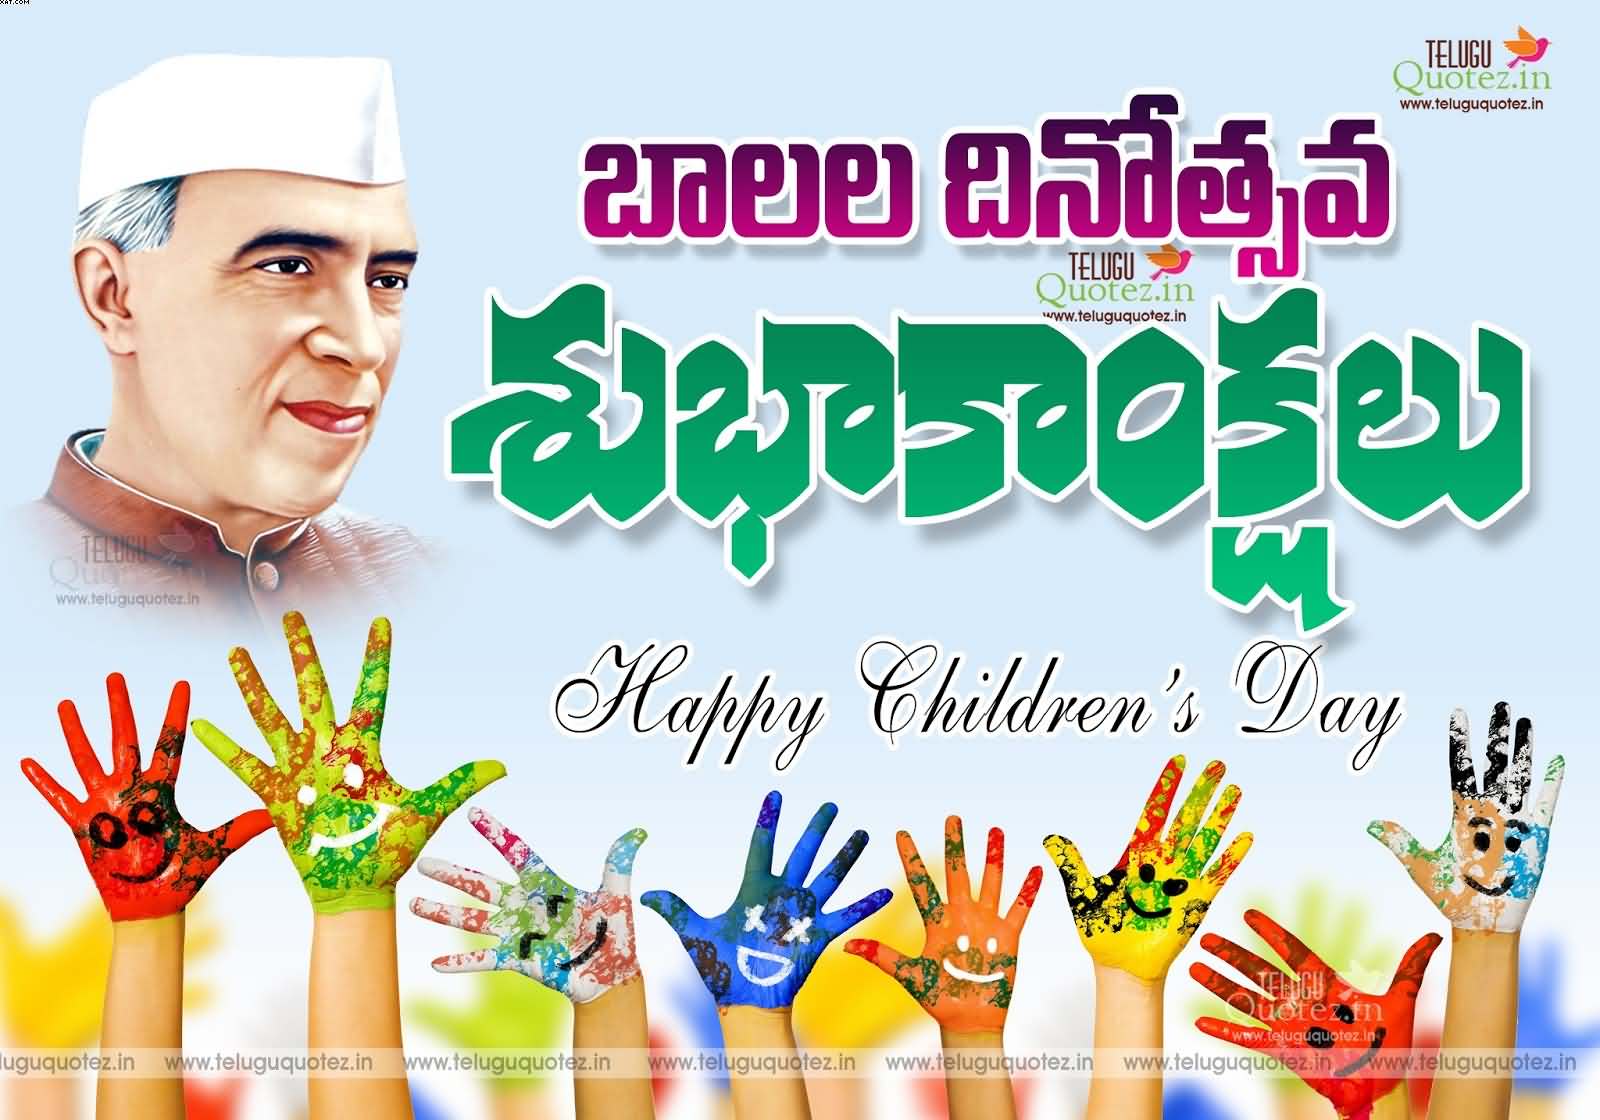 Happy Children’s Day Telugu Wishes Wallpaper - Happy Children's Day Images In Telugu - HD Wallpaper 